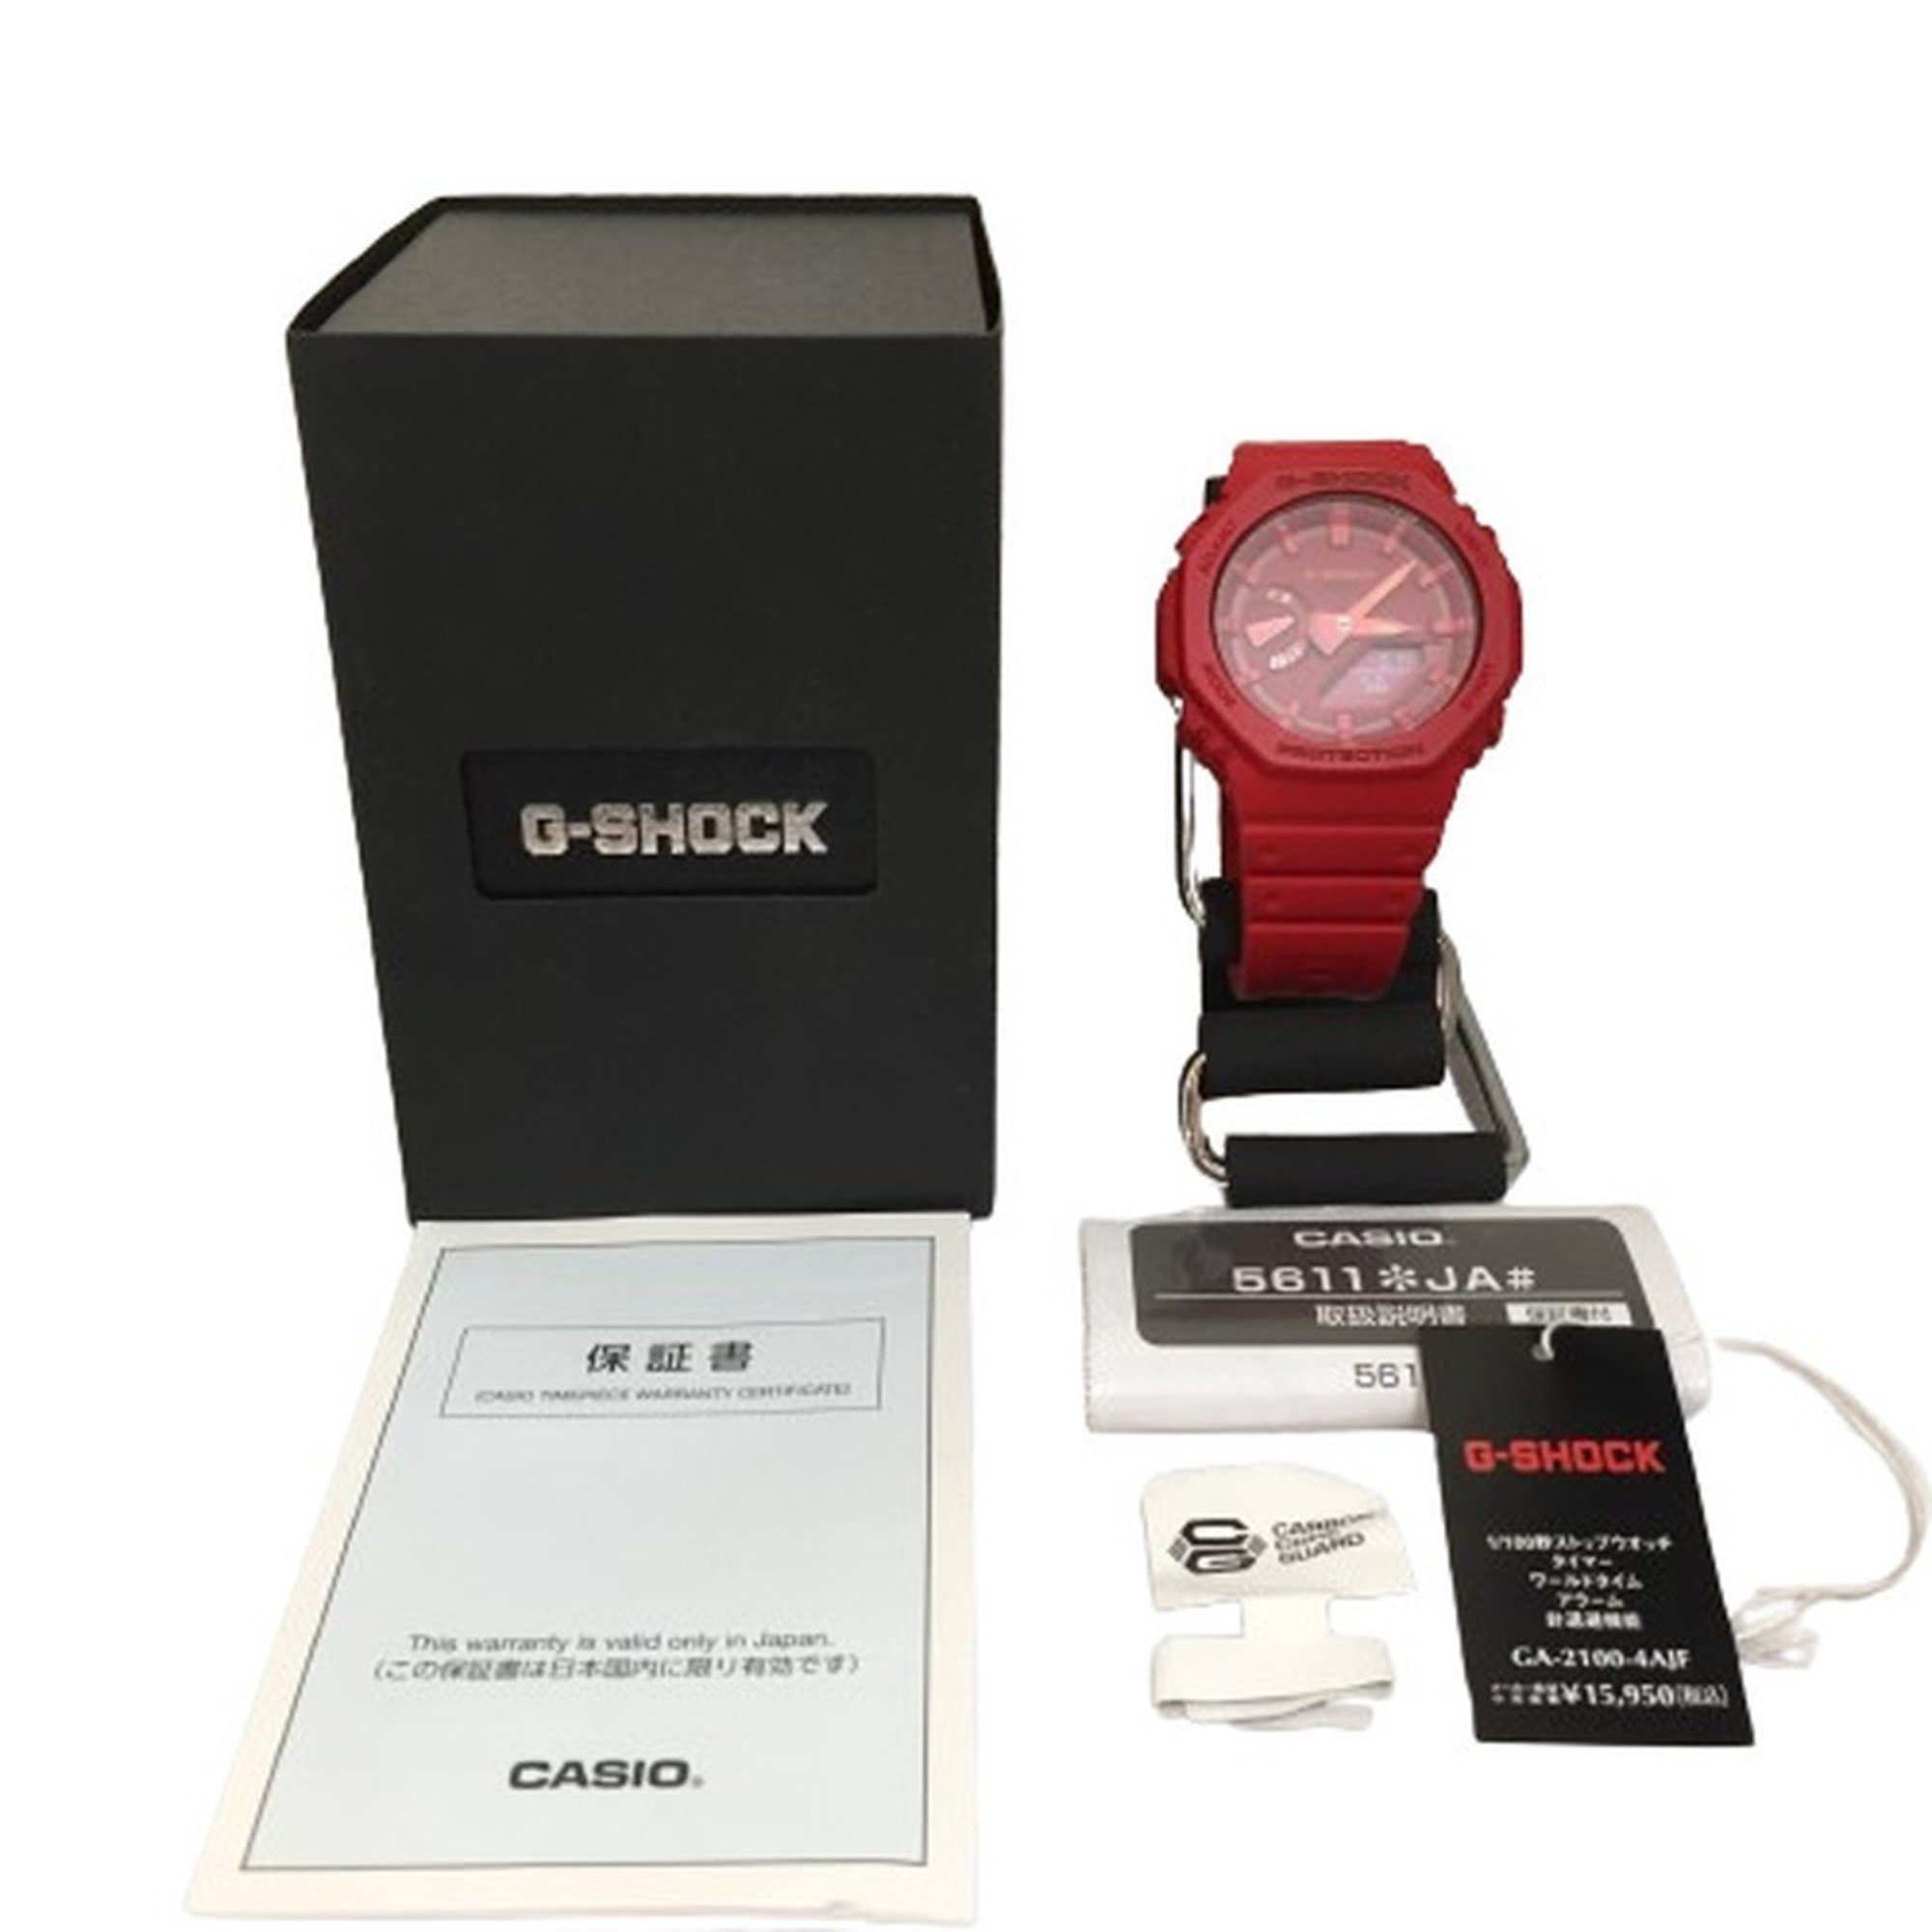 G-SHOCK CASIO GA-2100-4AJF Watch Analog-Digital Digital-Analog Red Octagon Kaizuka Store ITTX8D5Z0ZW0 RM1279D